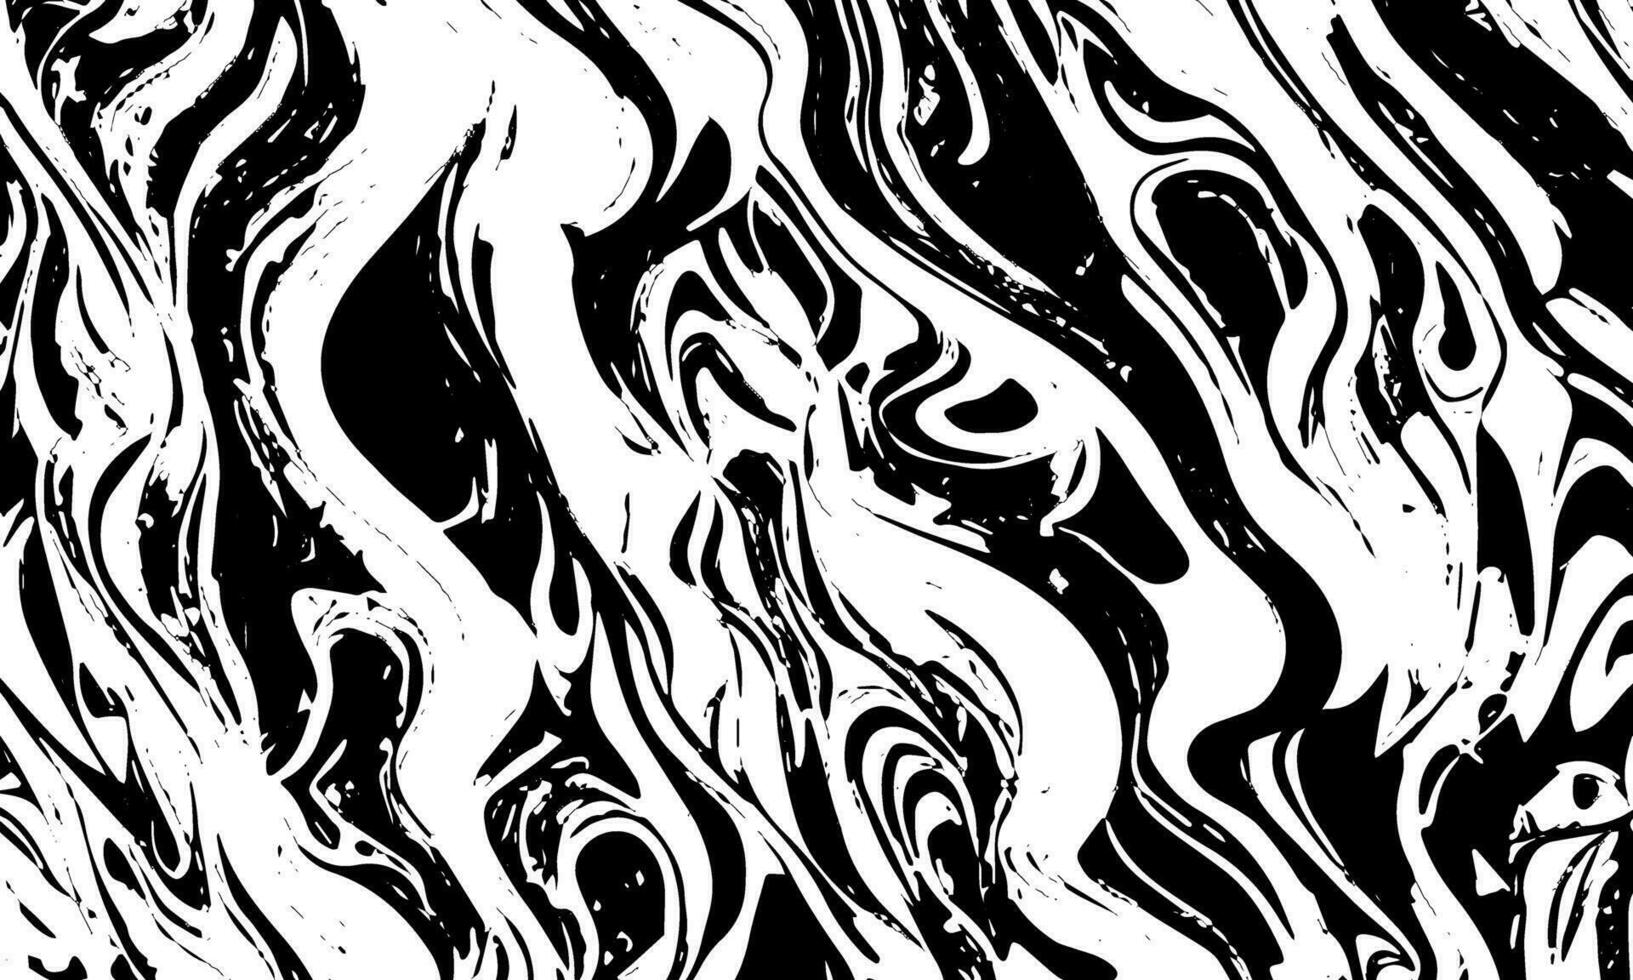 grunge chaotisch gedetailleerd zwart abstract textuur. vector achtergrond